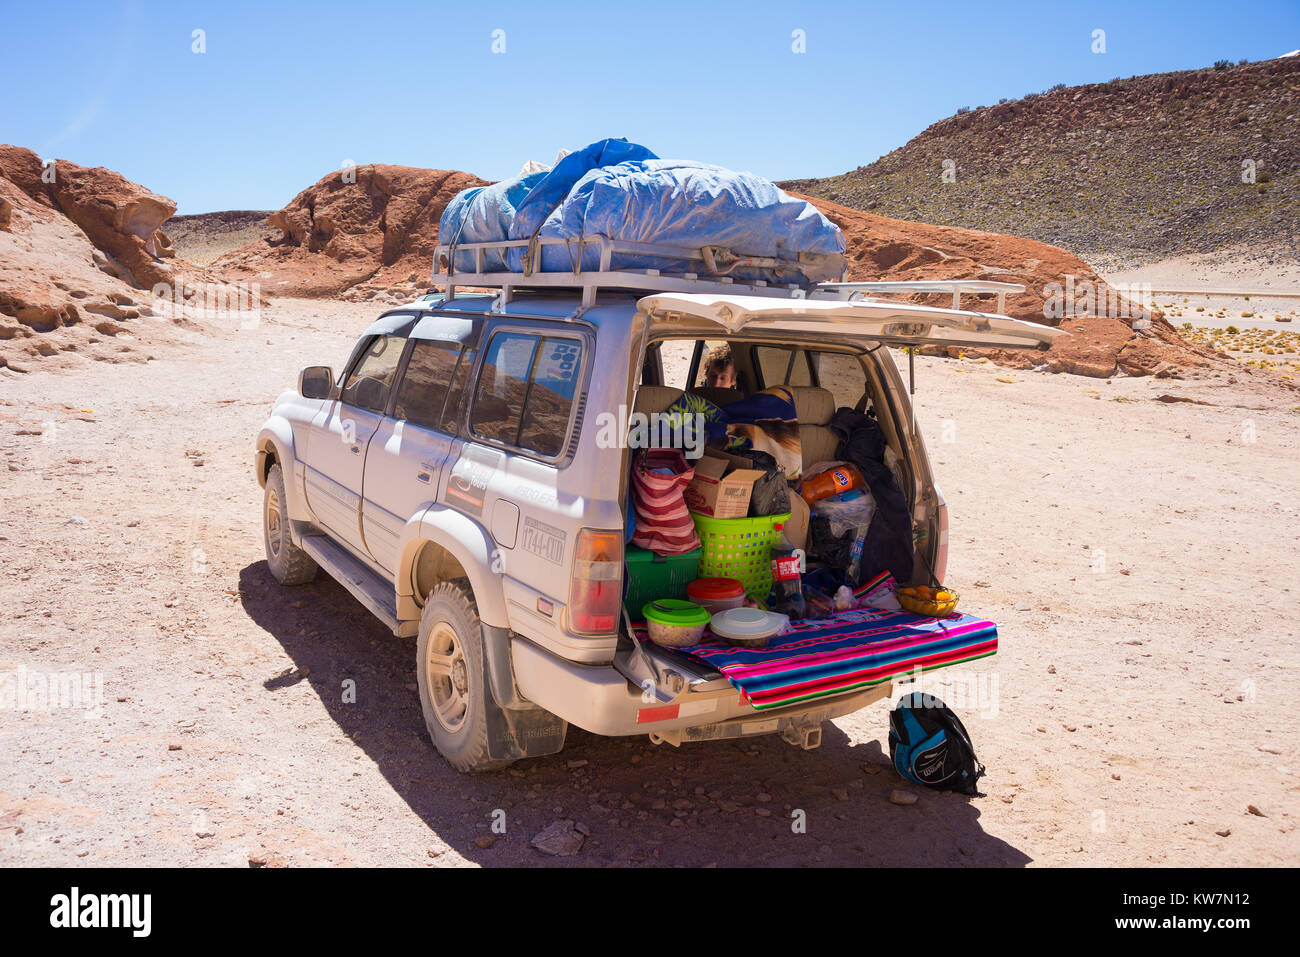 Huayllajc, Bolivia - Agosto 26, 2015: veicolo 4x4 di prendere i turisti sull'altopiano desertico delle Ande in Huayllajc, Bolivia, roadtrip al mondo Foto Stock